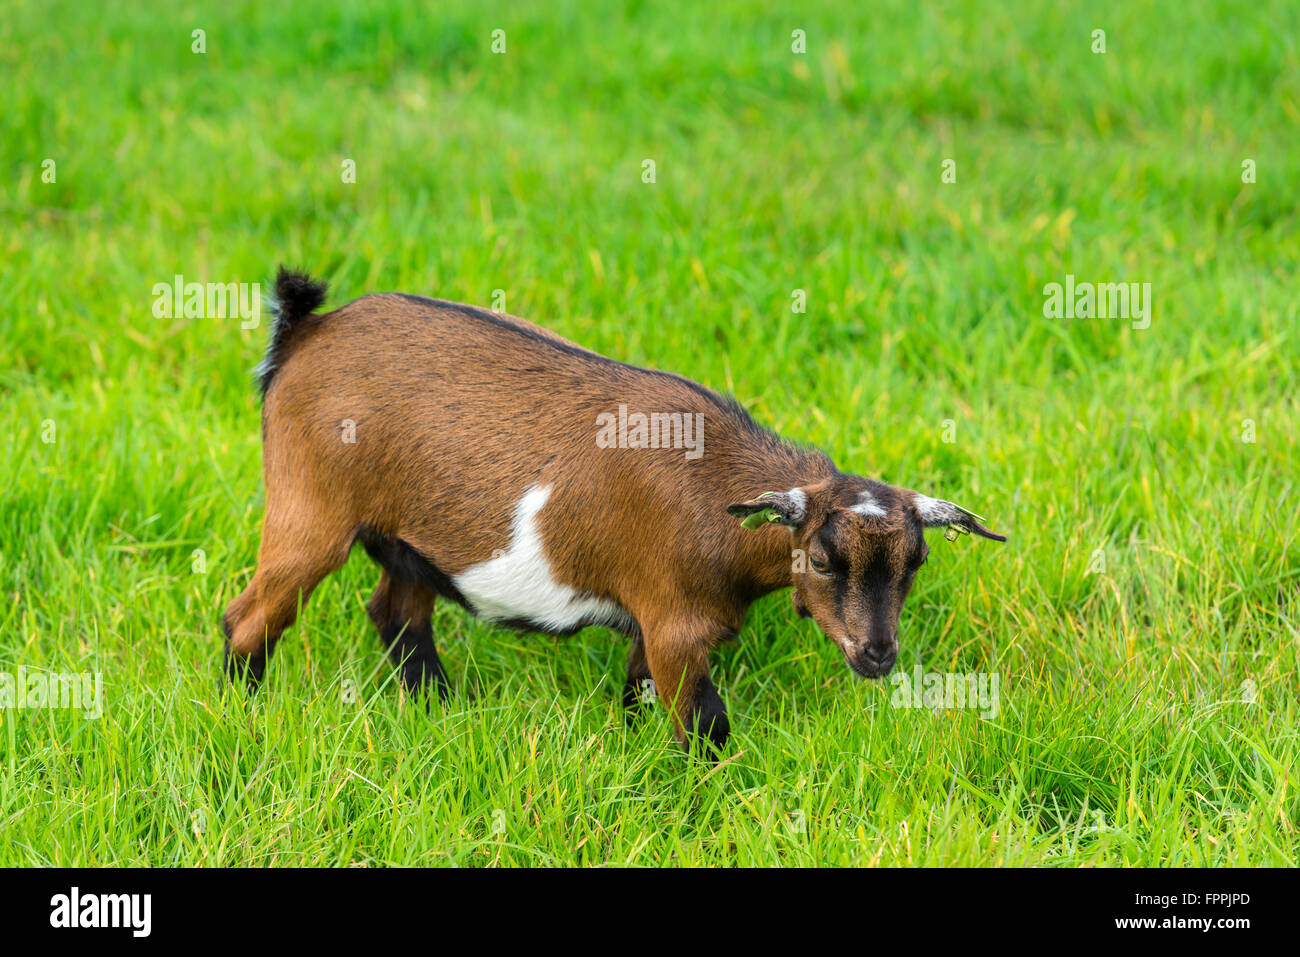 Une chèvre brune de manger de l'herbe verte à la ferme Banque D'Images